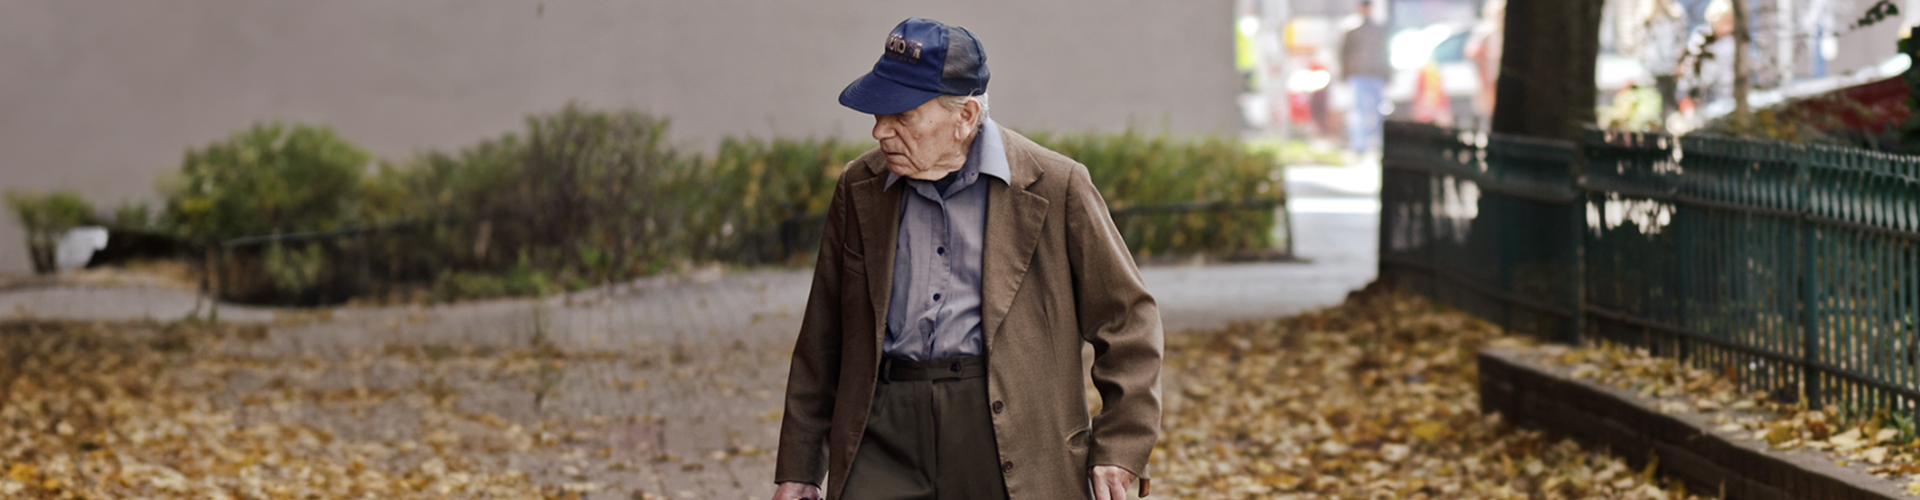 An elderly man walking in a street full of fallen leaves.